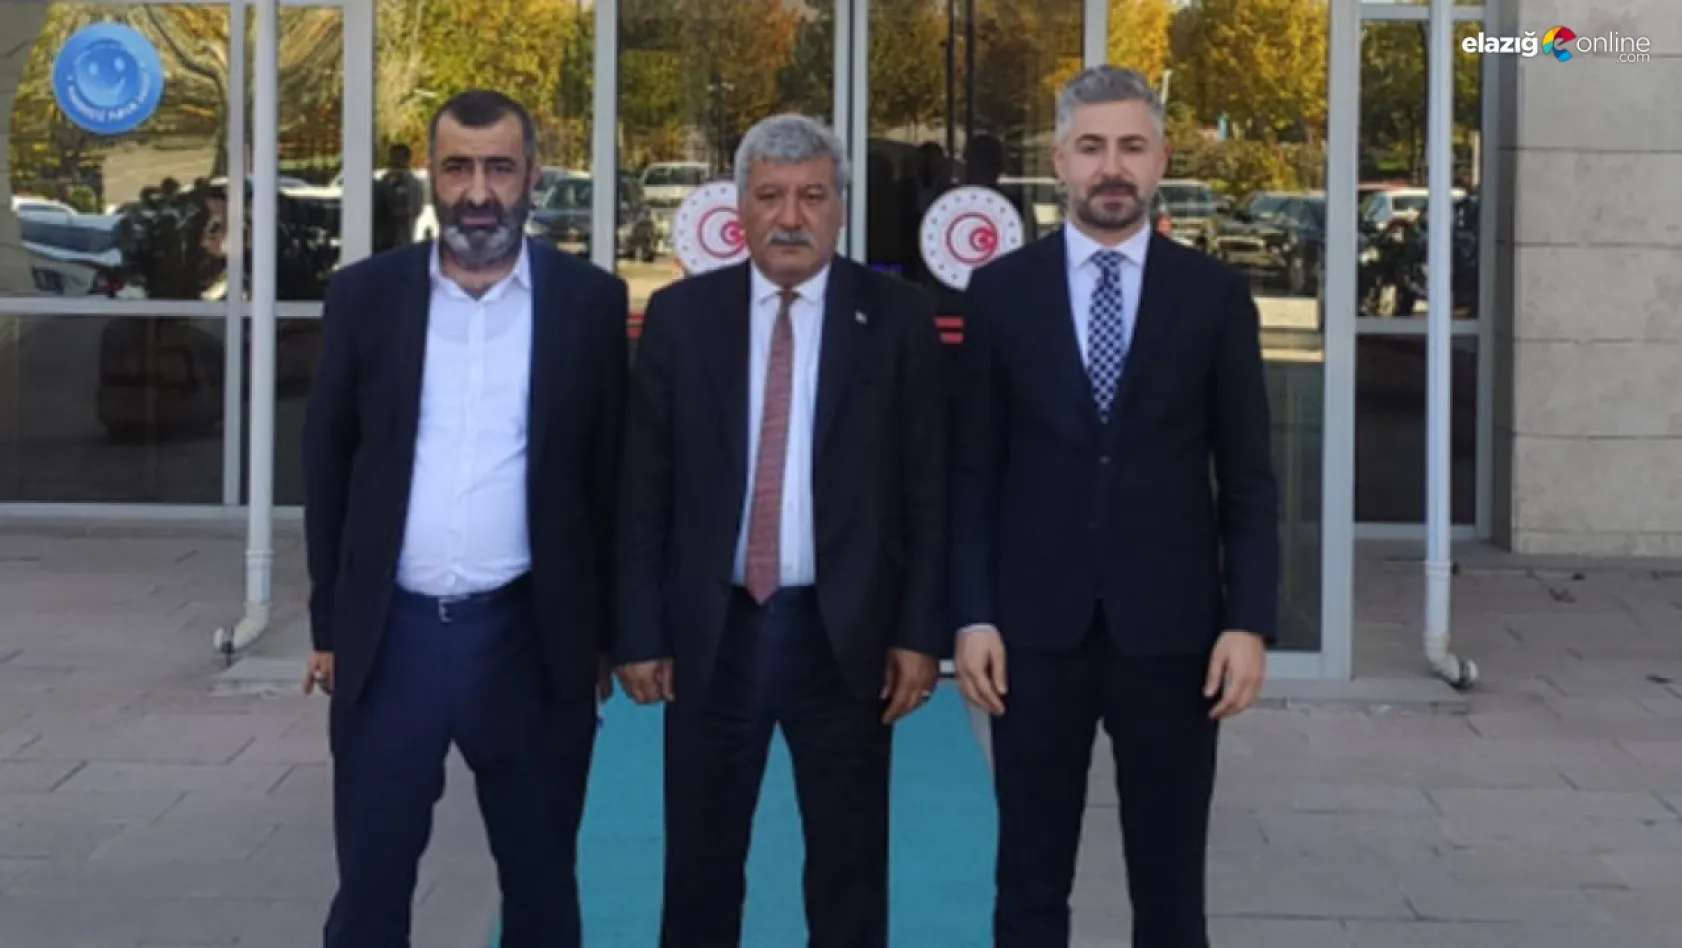 Elazığ Oda Başkanlarından Ankara'ya çıkarma!